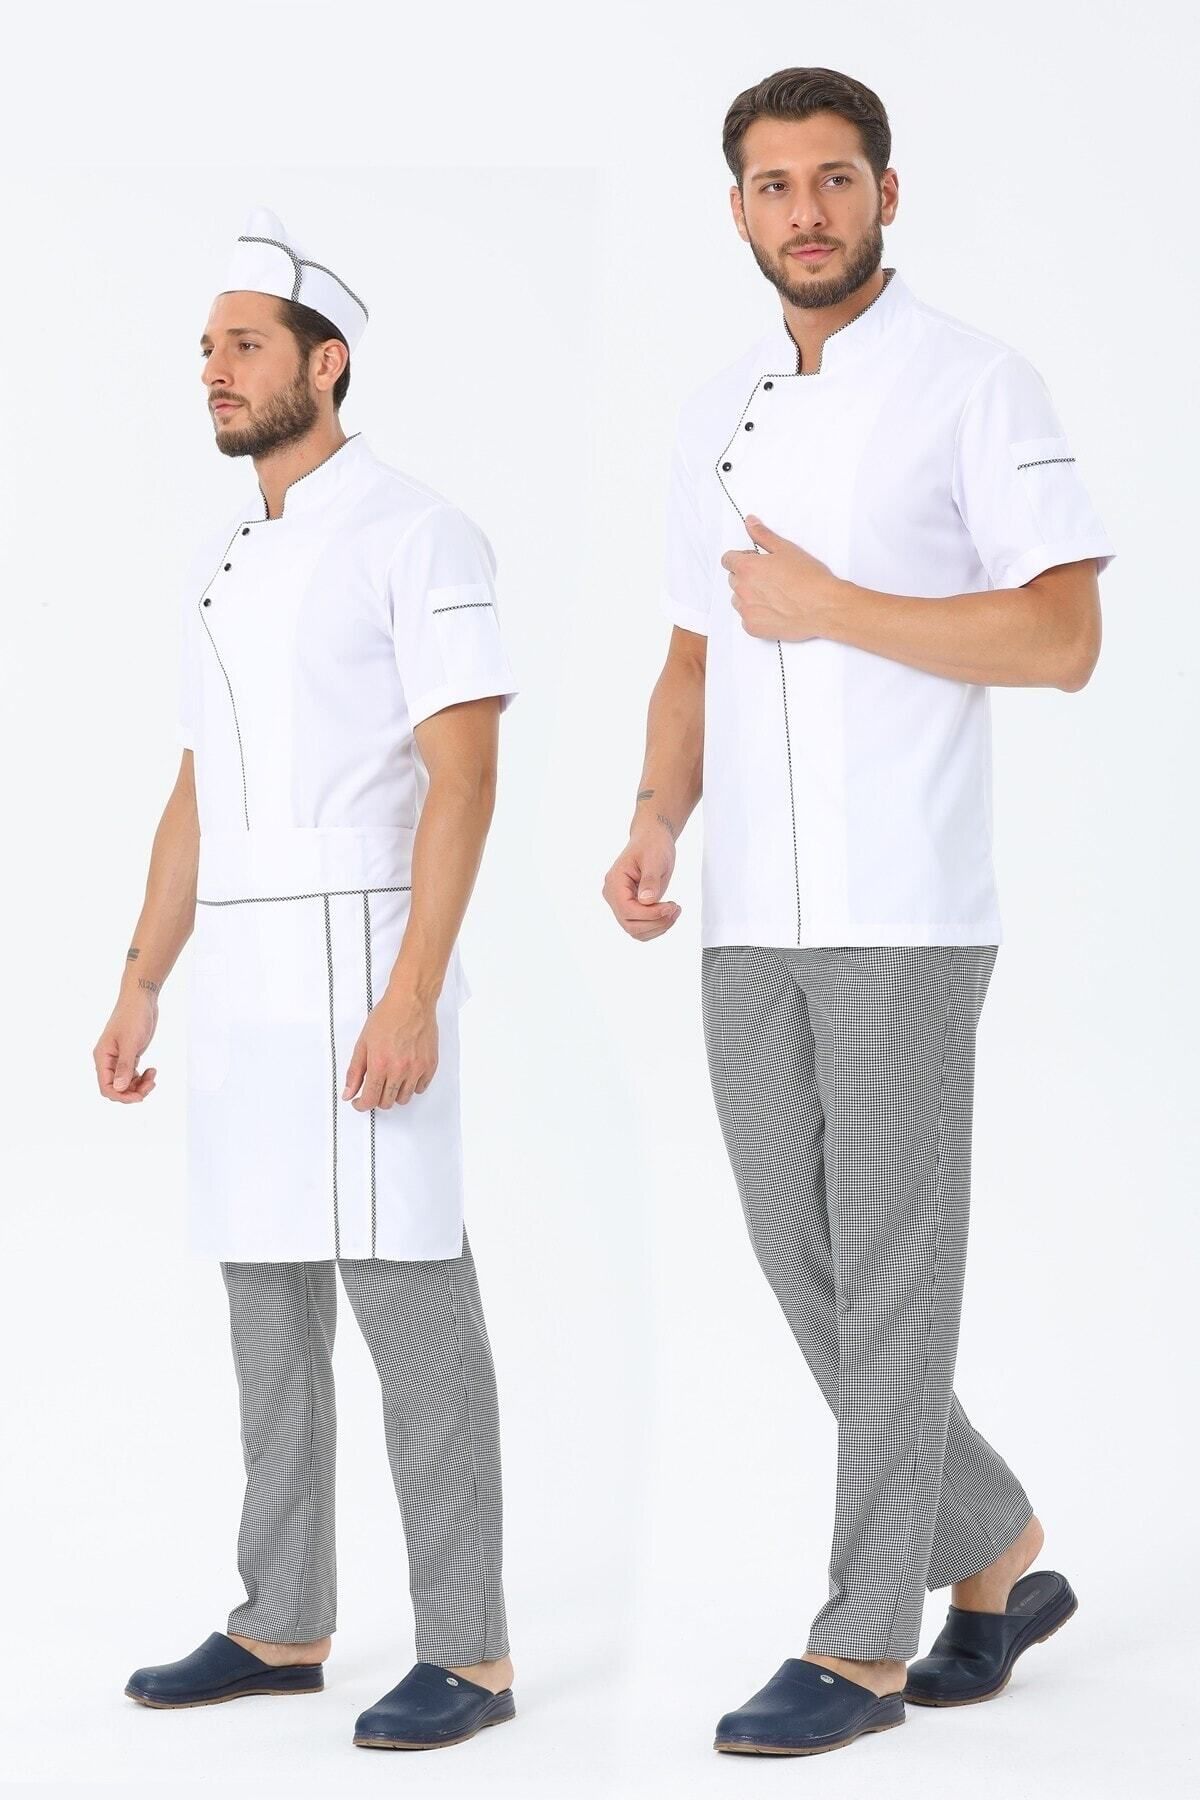 TIPTEKS Erkek Kısa Kol Beyaz - Pötikare Aşçı Ceket + Aşçı Pantolon + Bel Önlük Ve Kep Dörtlü Takım